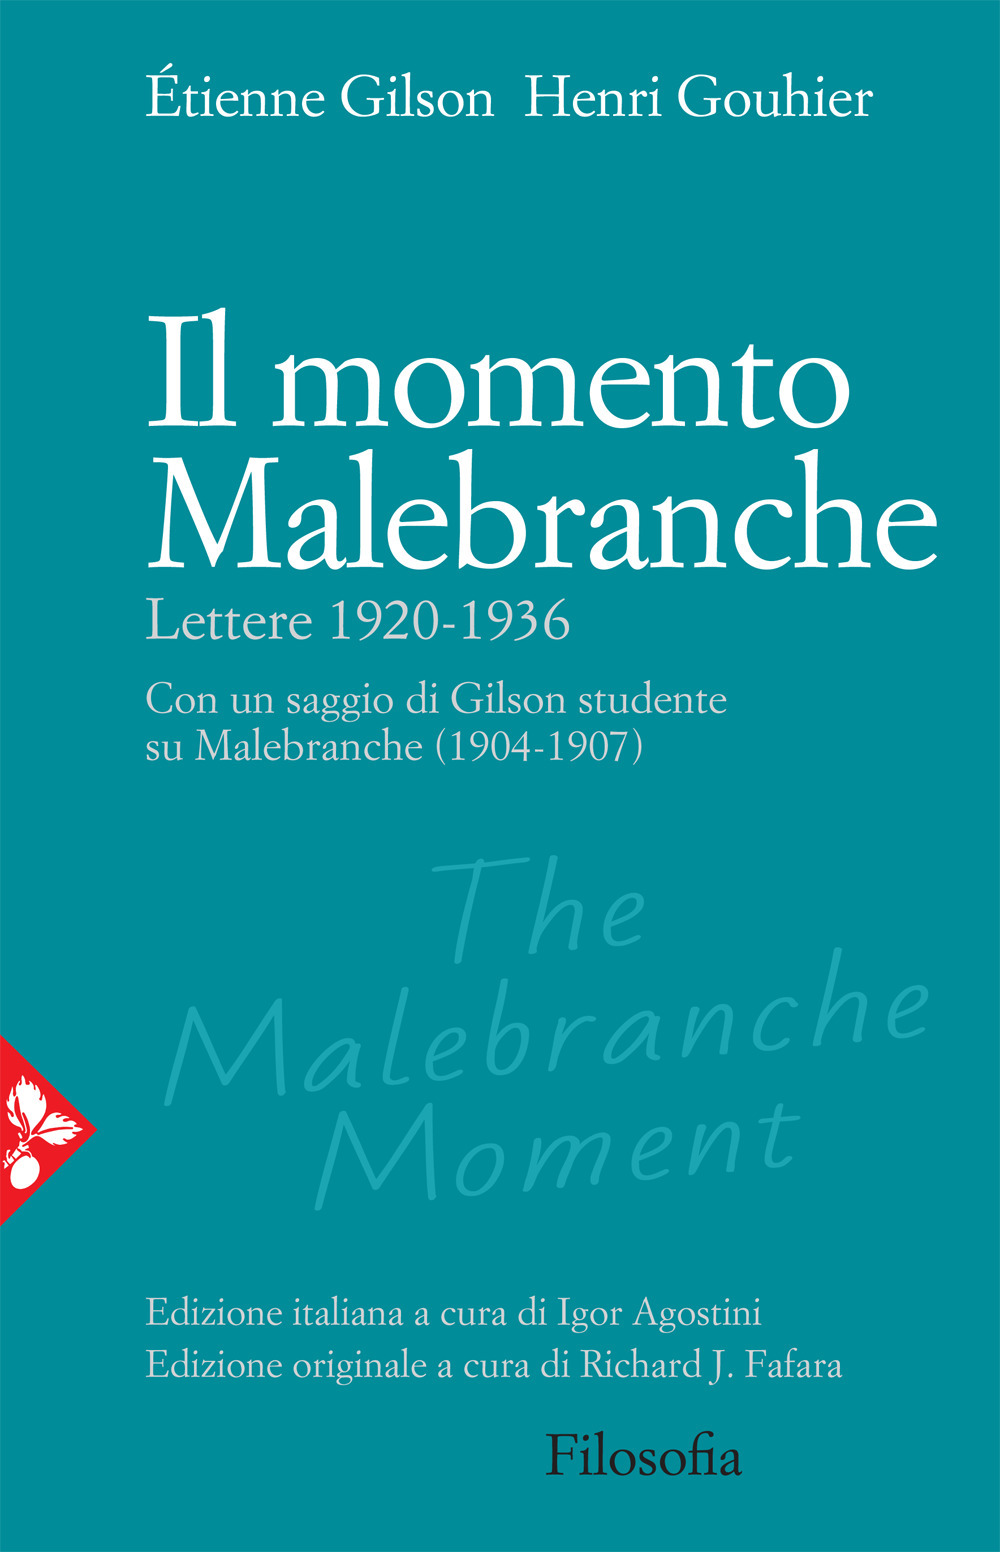 Libri Étienne Gilson / Gouhier Henri - Il Momento Malebranche. Lettere 1920-1936 NUOVO SIGILLATO, EDIZIONE DEL 15/04/2021 SUBITO DISPONIBILE